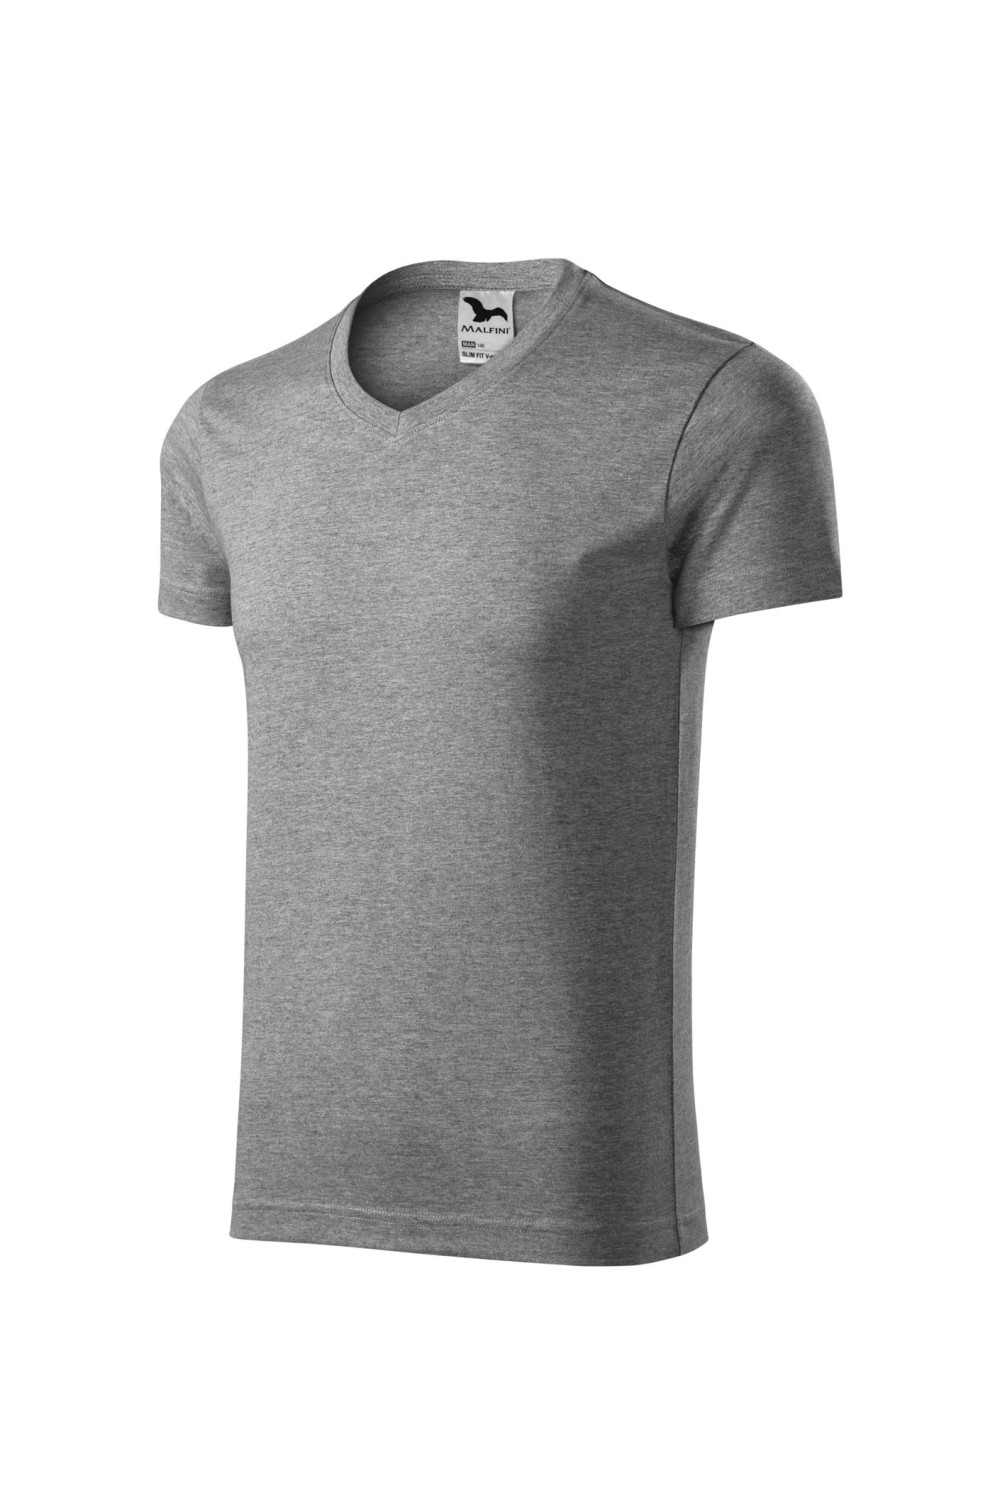 Koszulka męska 100% bawełna t-shirt SLIM FIT V-NECK 146 kolor ciemnoszary melanż